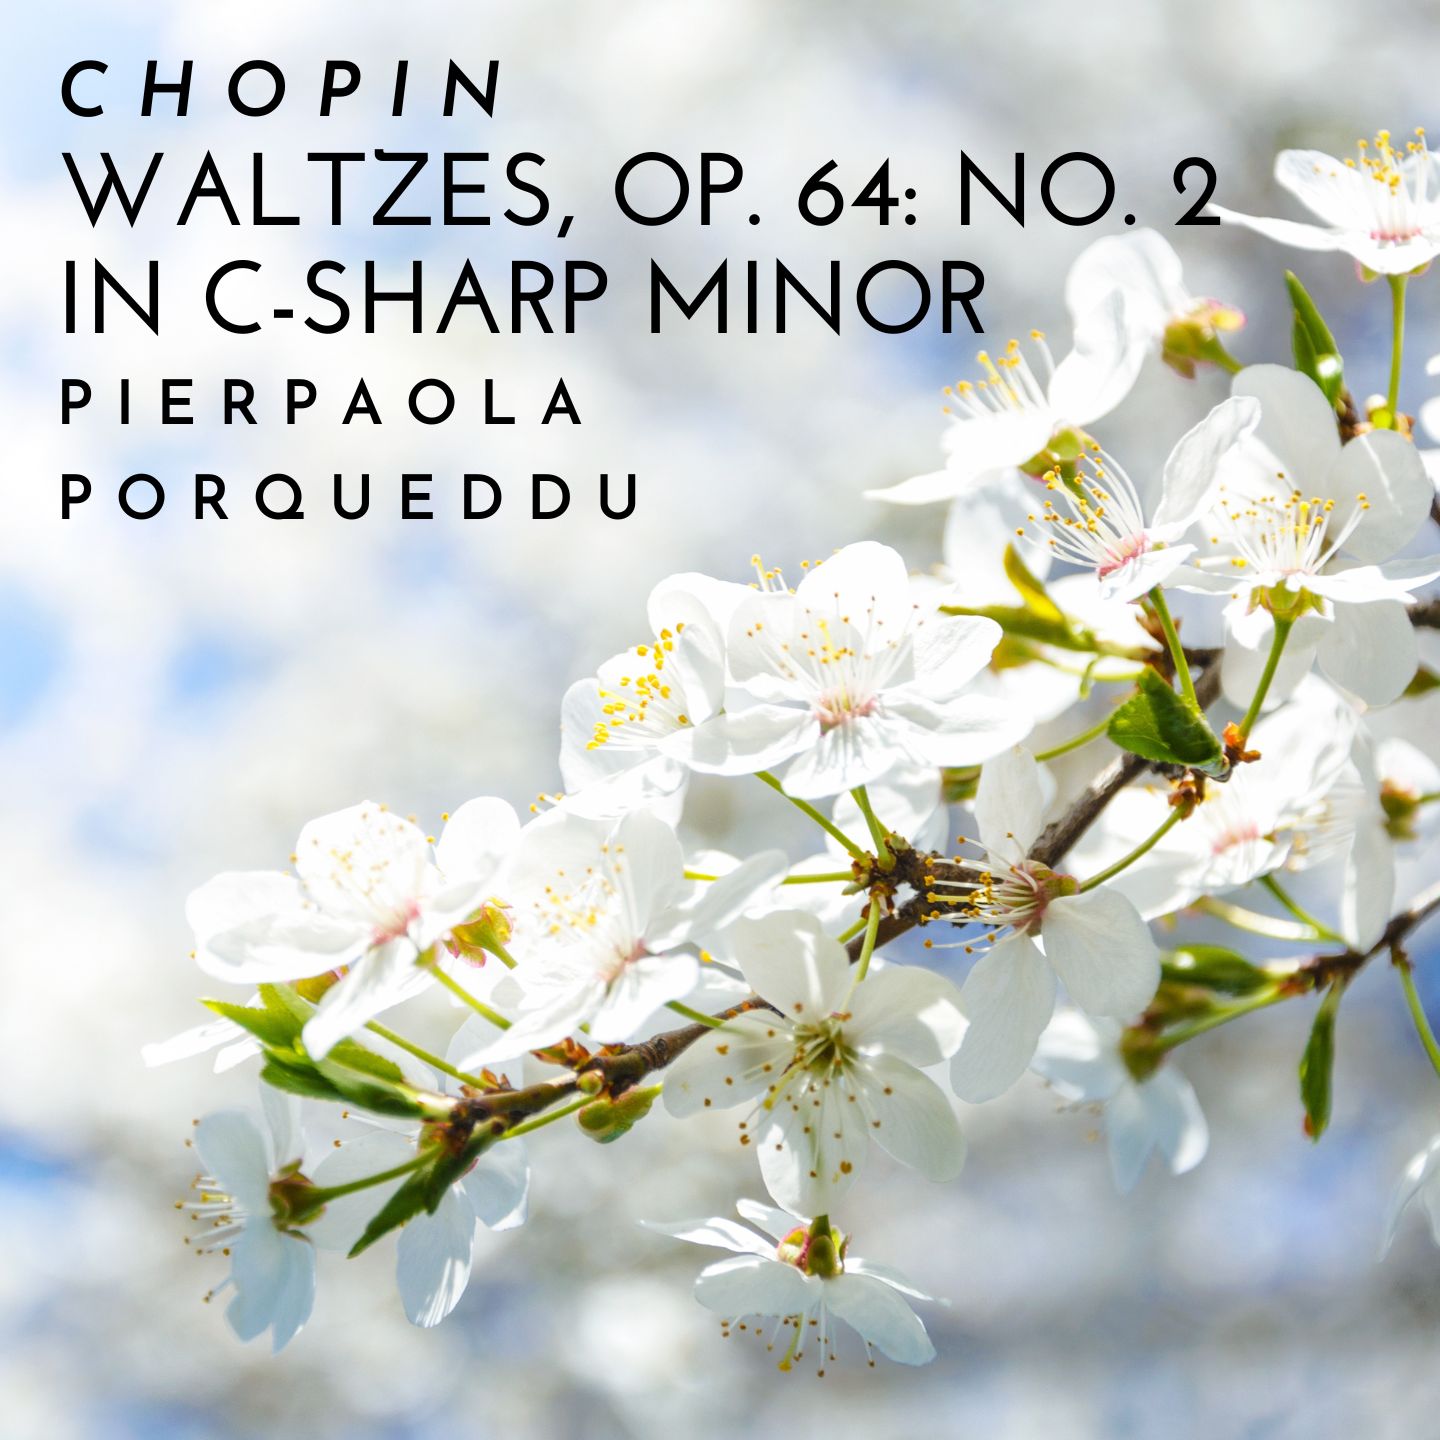 Waltzes, Op. 64: No. 2 in C-sharp minor